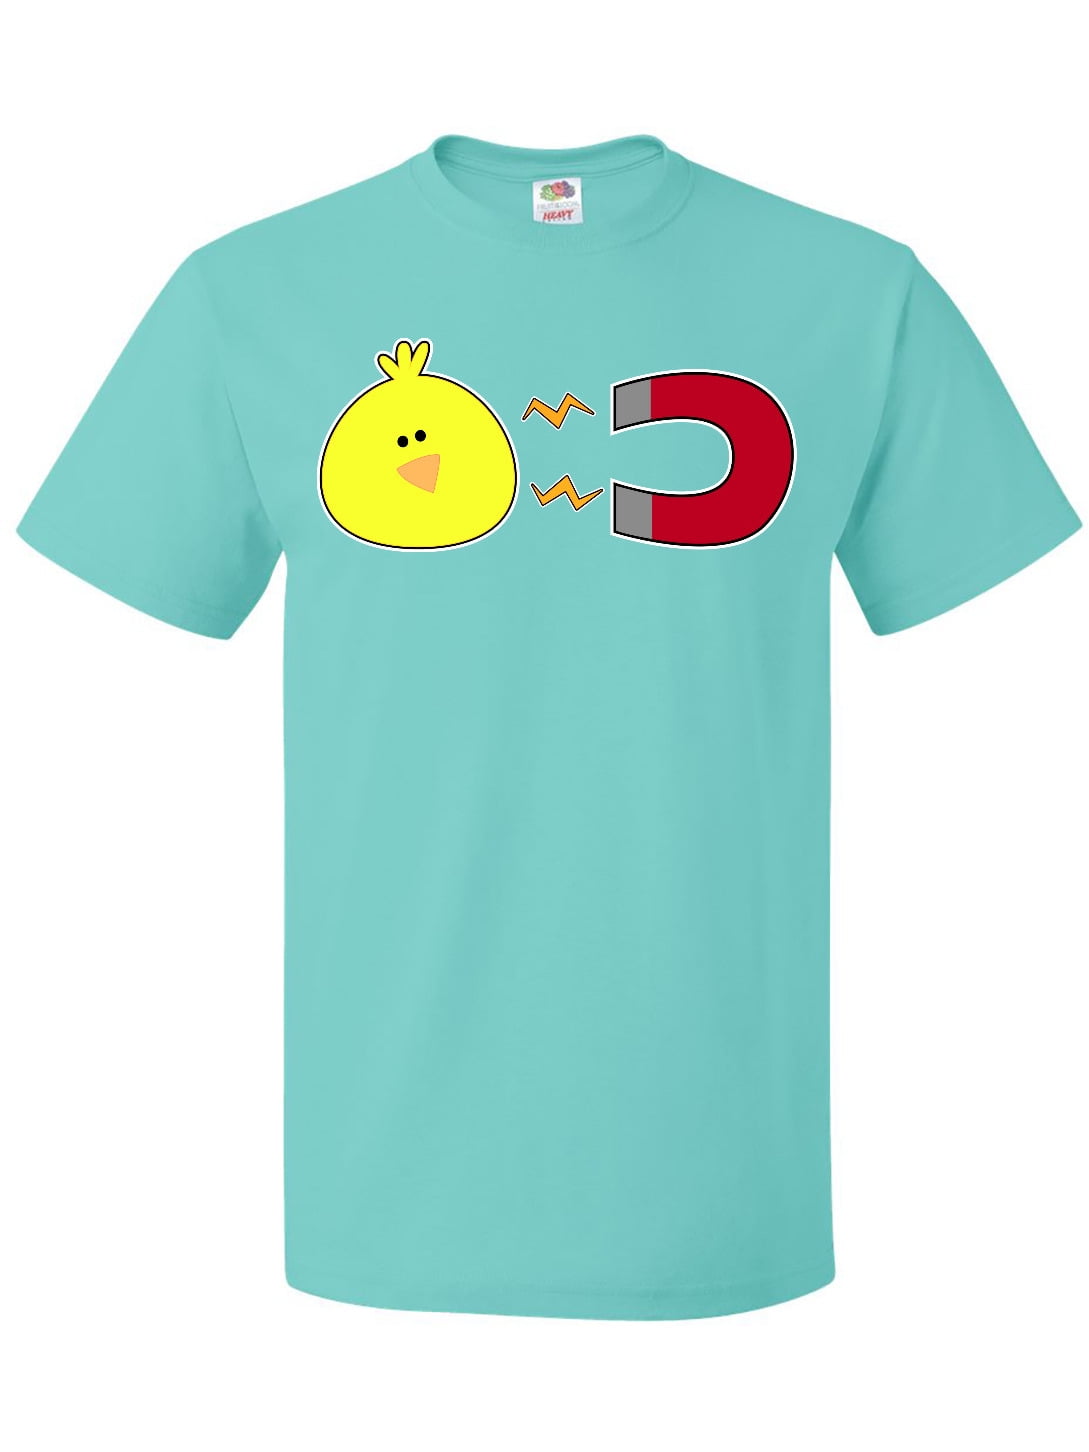 Chick T-Shirt - Walmart.com